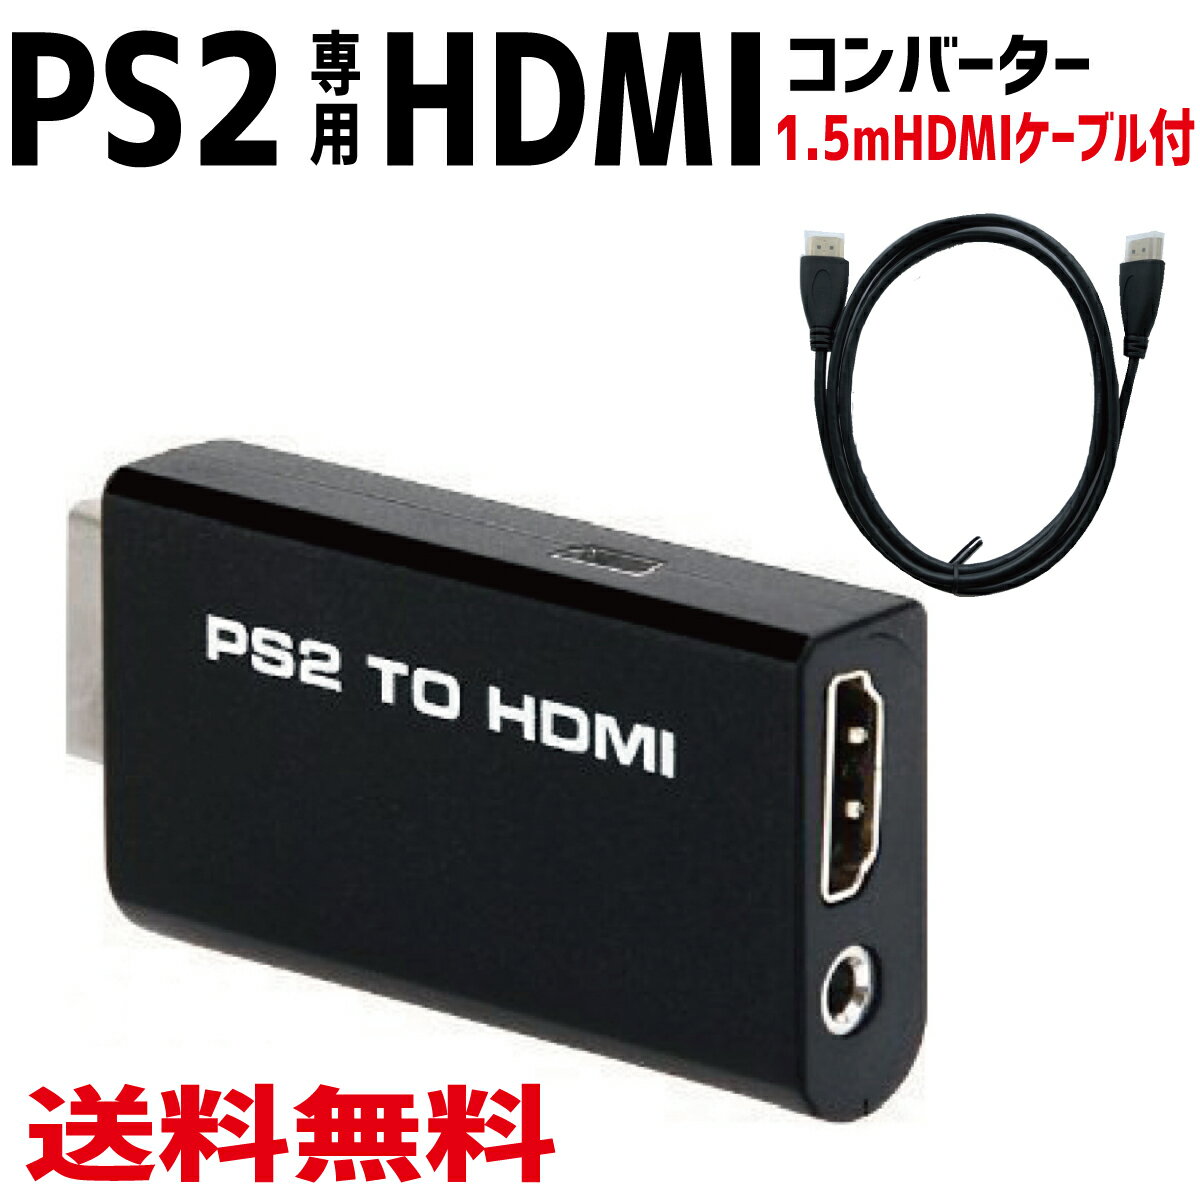 PS2 TO HDMI С PS2 PS2 to HDMI ³ͥ Ѵ ץ 1.5mHDMI֥դ